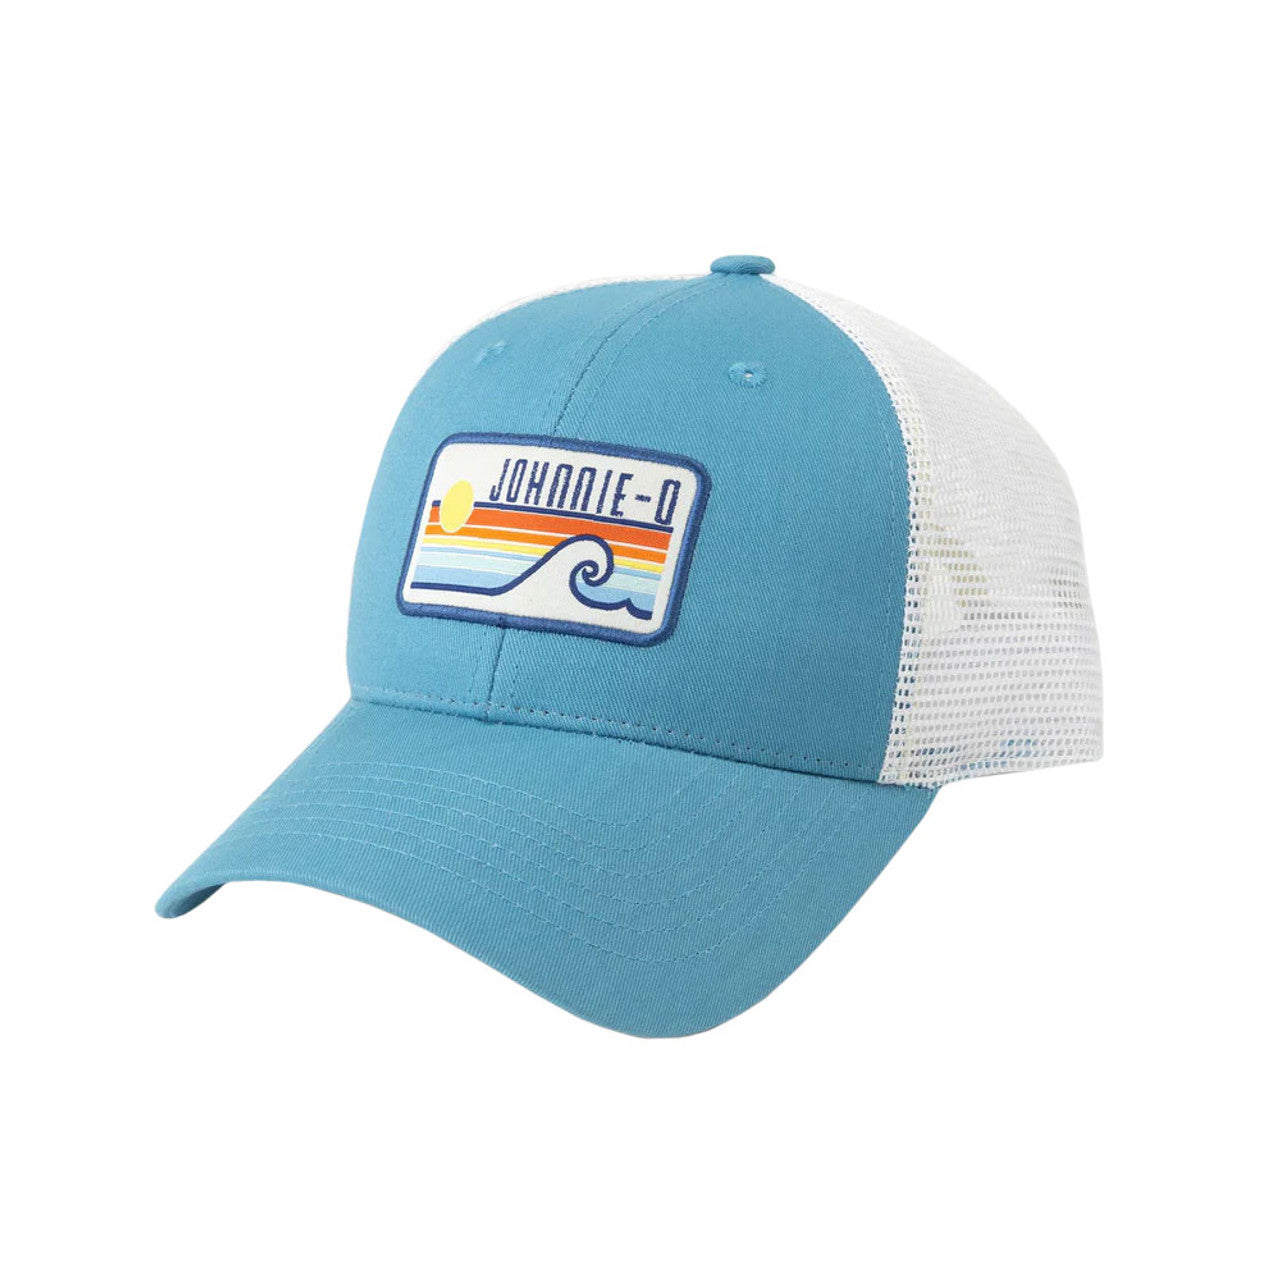 Johnnie-O Sun & Wave Trucker Hat Accessories Johnnie-O Gulf  